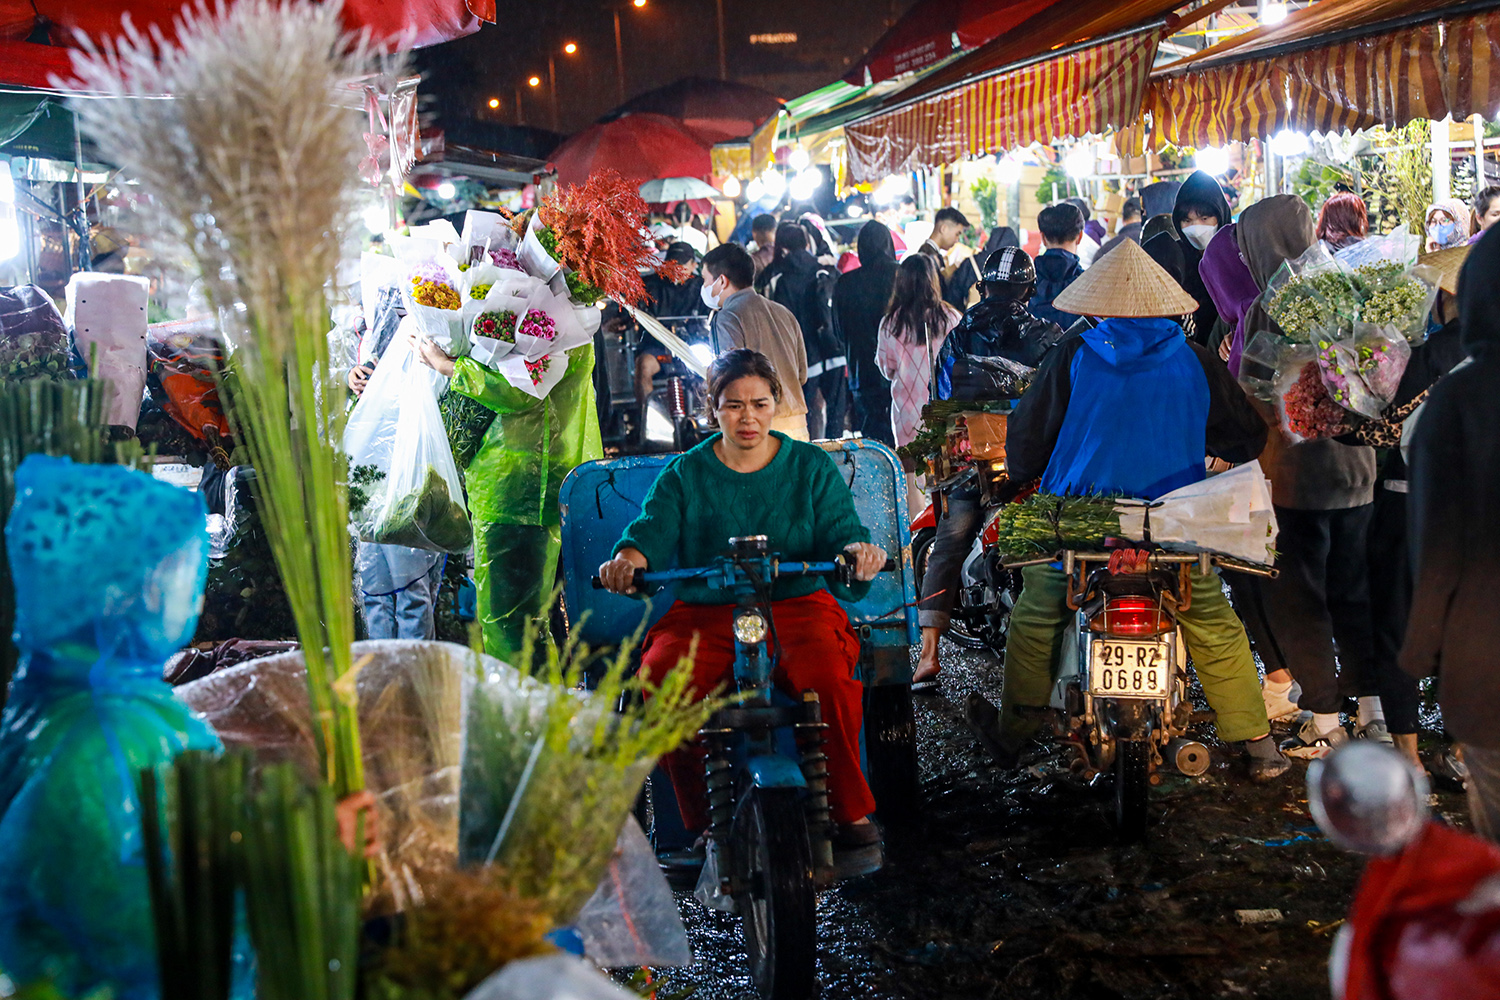 Chợ hoa Quảng An ( phường Quảng An, quận Tây Hồ, TP Hà Nội) được gọi là chợ hoa lớn nhất miền Bắc. Vốn đã nhộn nhịp người mua, kẻ bán trong ngày bình thường, đêm 19 rạng sáng 20/10, chợ hoa đêm Quảng Bá lại càng nhộn nhịp hơn so với thường ngày.